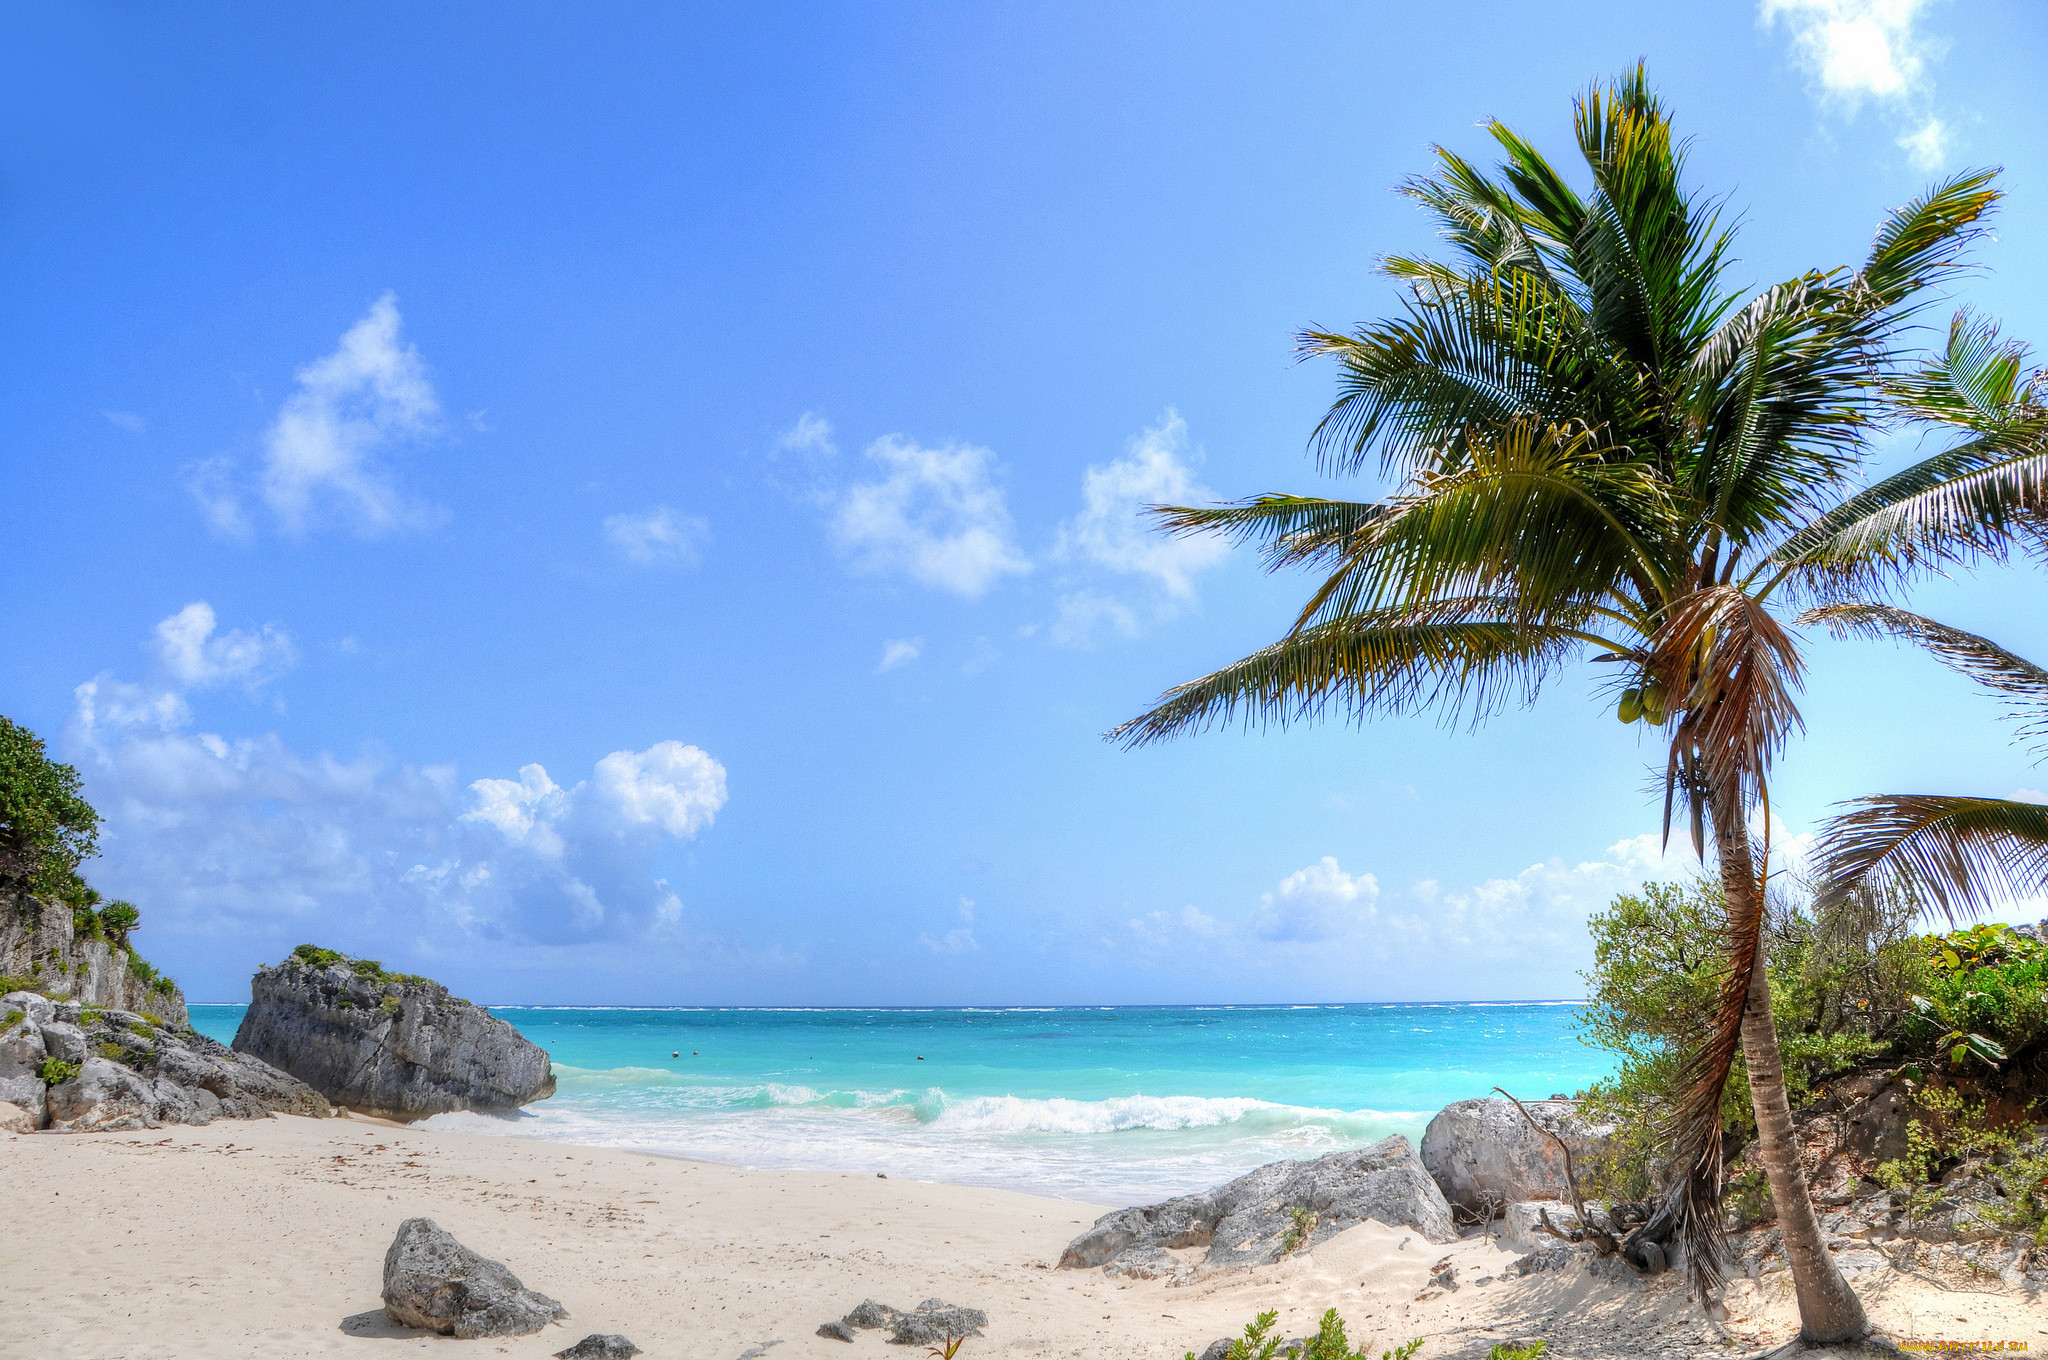 Beach tree. Пальмы песок. Пляж. Море пляж. Пляж с пальмами.